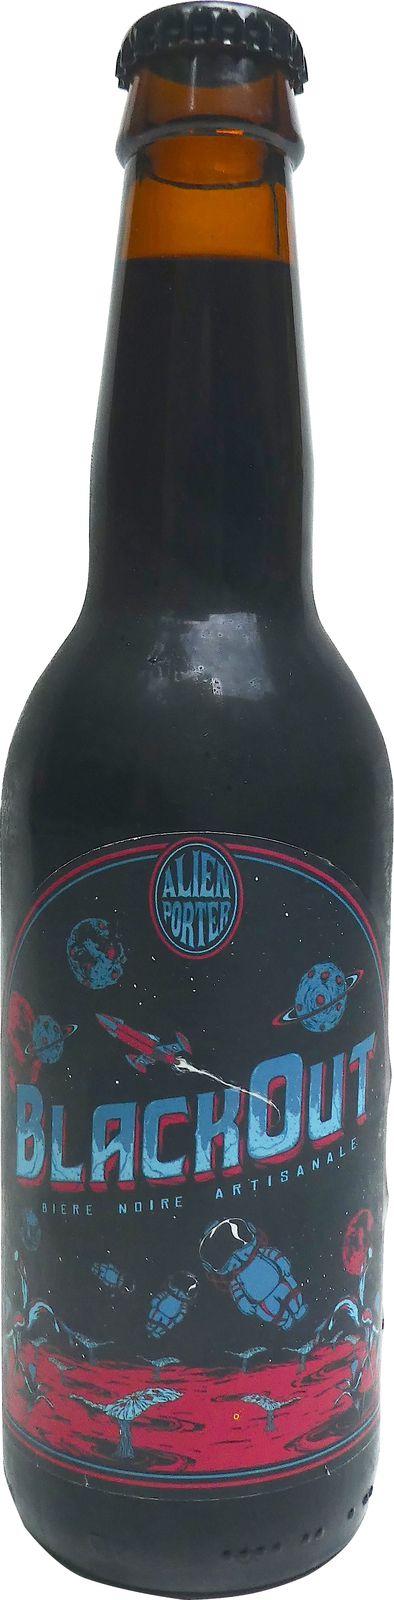 Photo de la bière BlackOut Alien Porter de la brasserie La Choulette